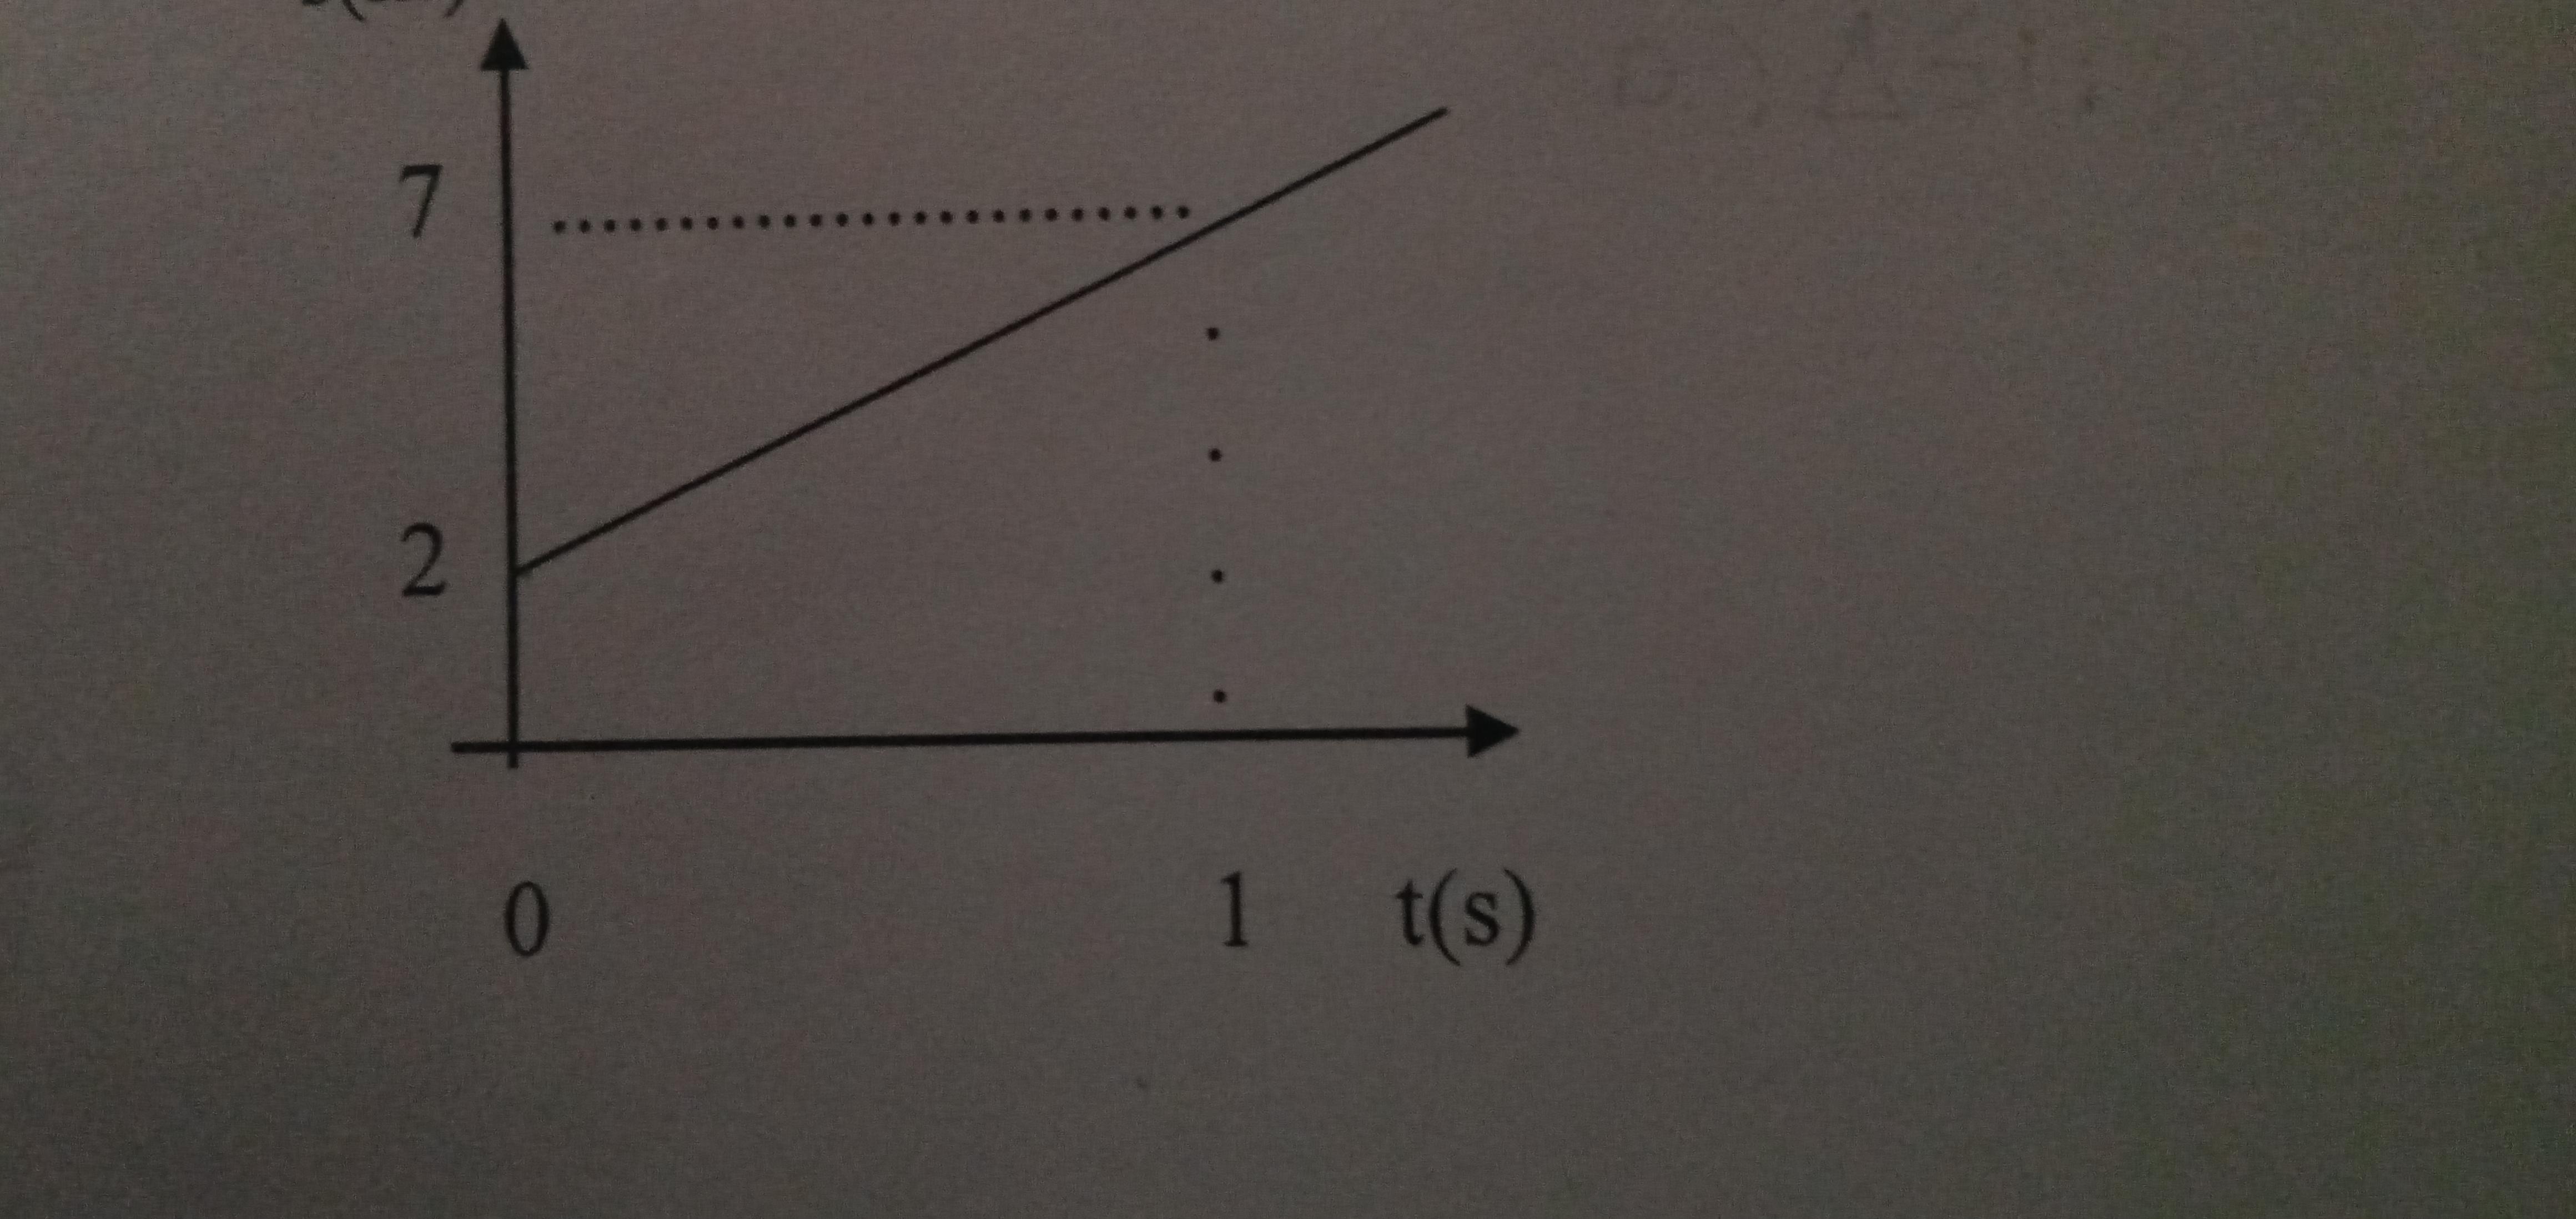 O gráfico indica a posição de um móvel, no decorrer do tempo, sobre uma trajetória retilínea.a) Qual a posição inicial do móvel?